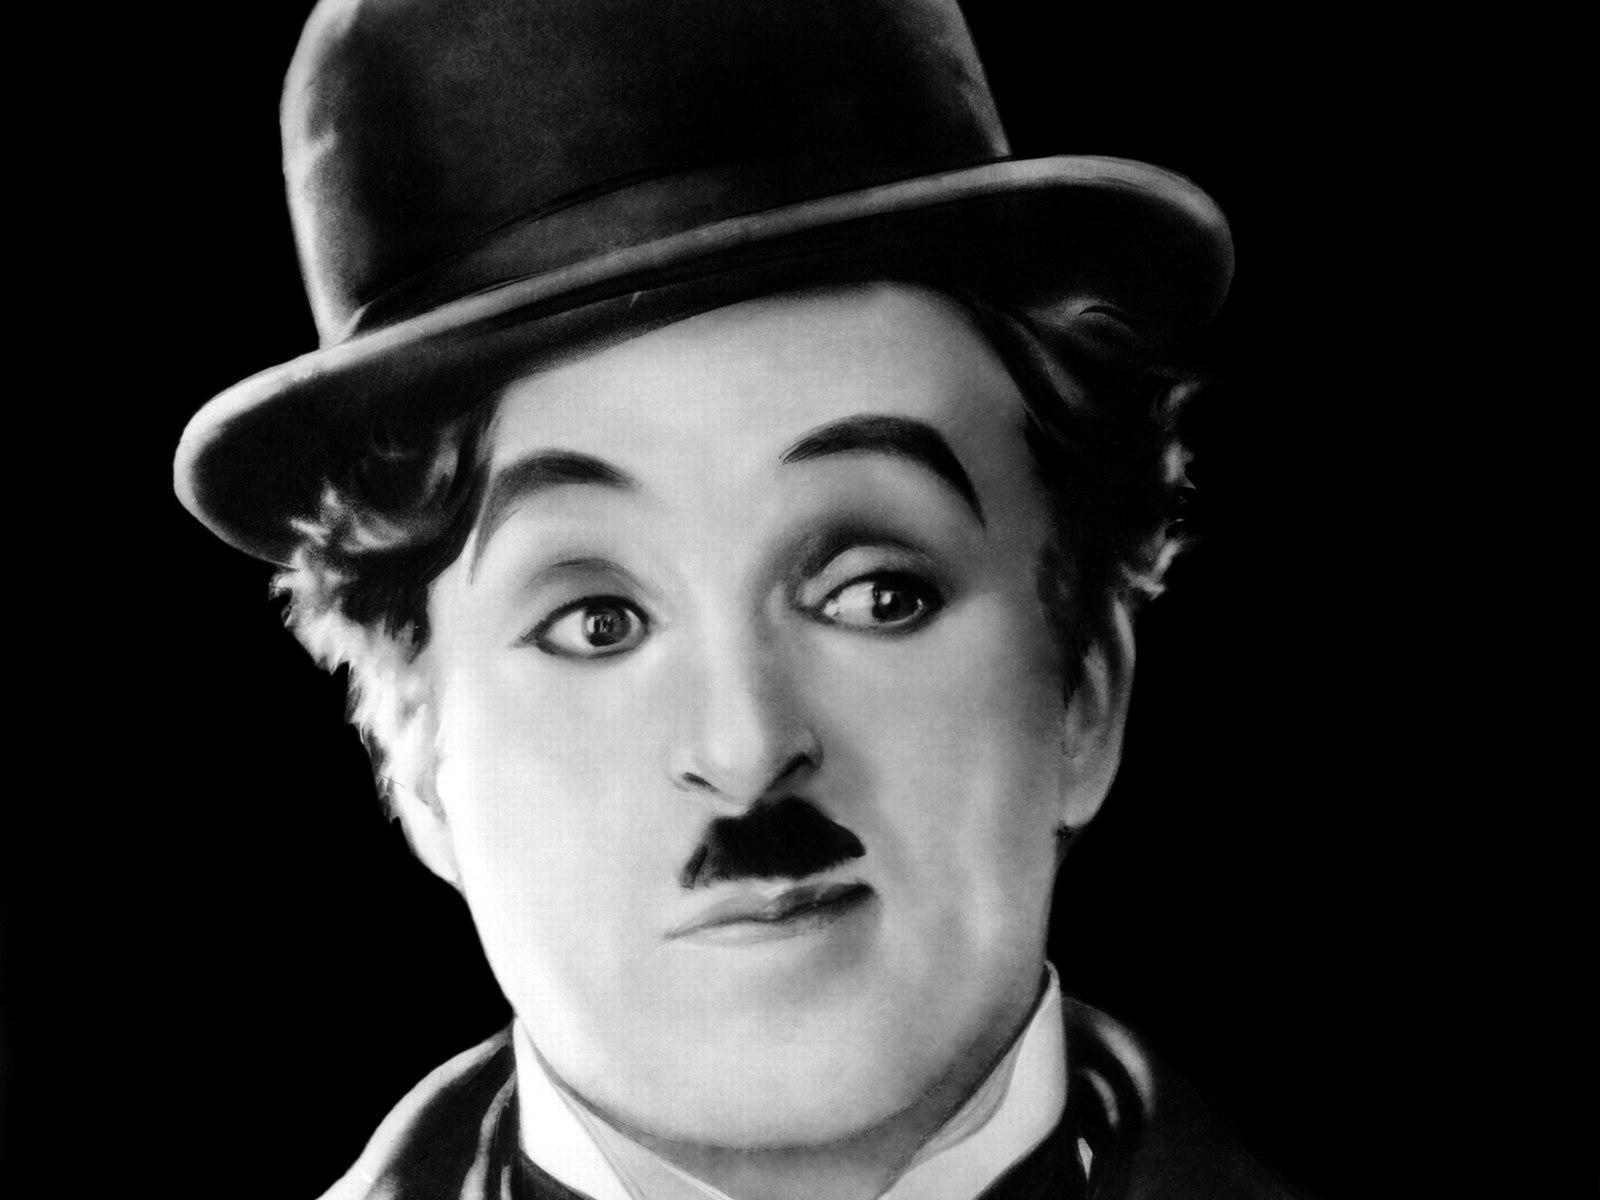 Charlie Chaplin :आज के दिन हुआ था दुनिया के सबसे महान कलाकार चार्ली चैपलिन का जन्मदिन